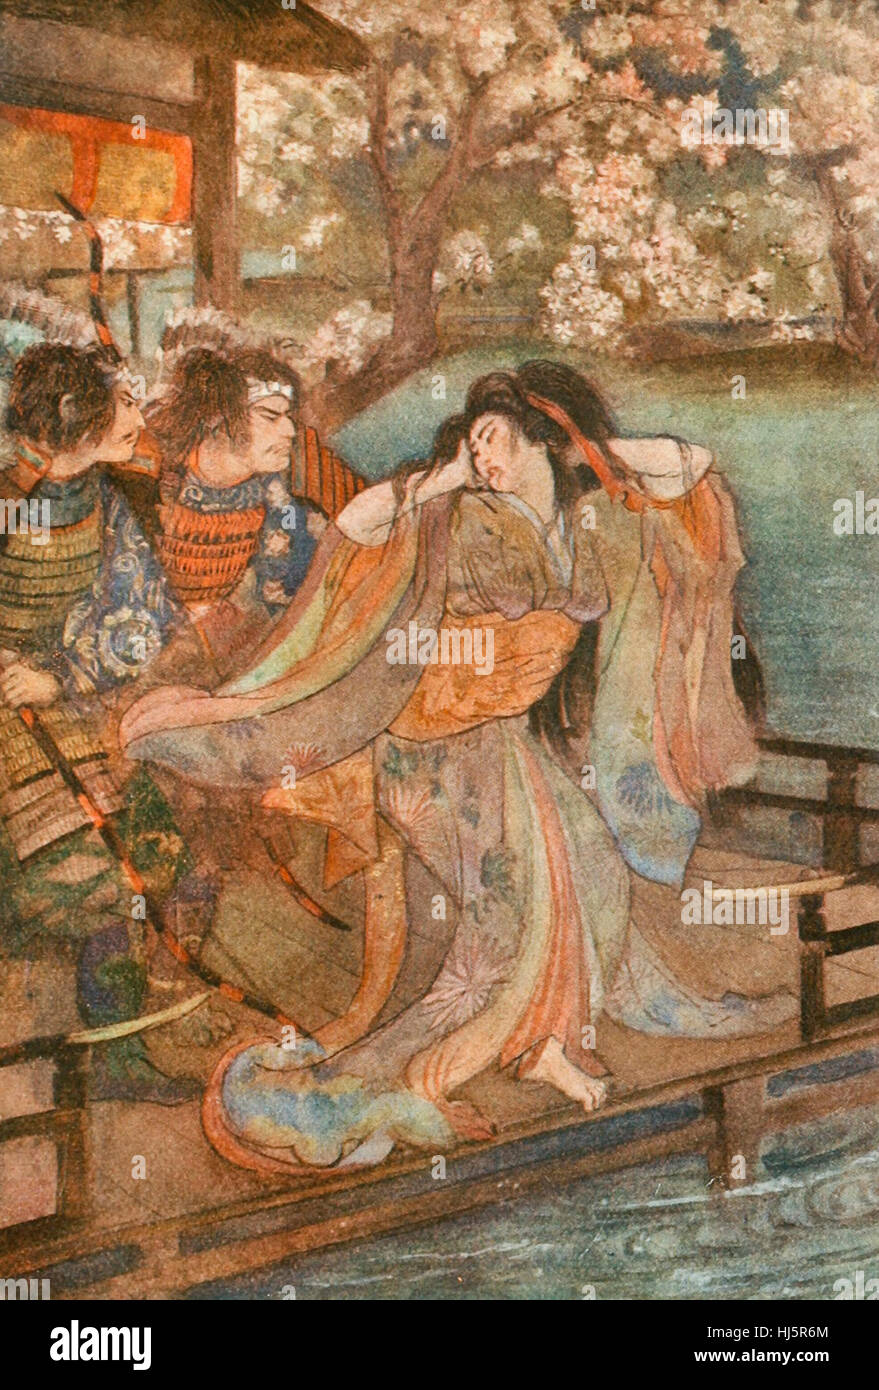 La jeune fille de l'Unai, folklore japonais Banque D'Images